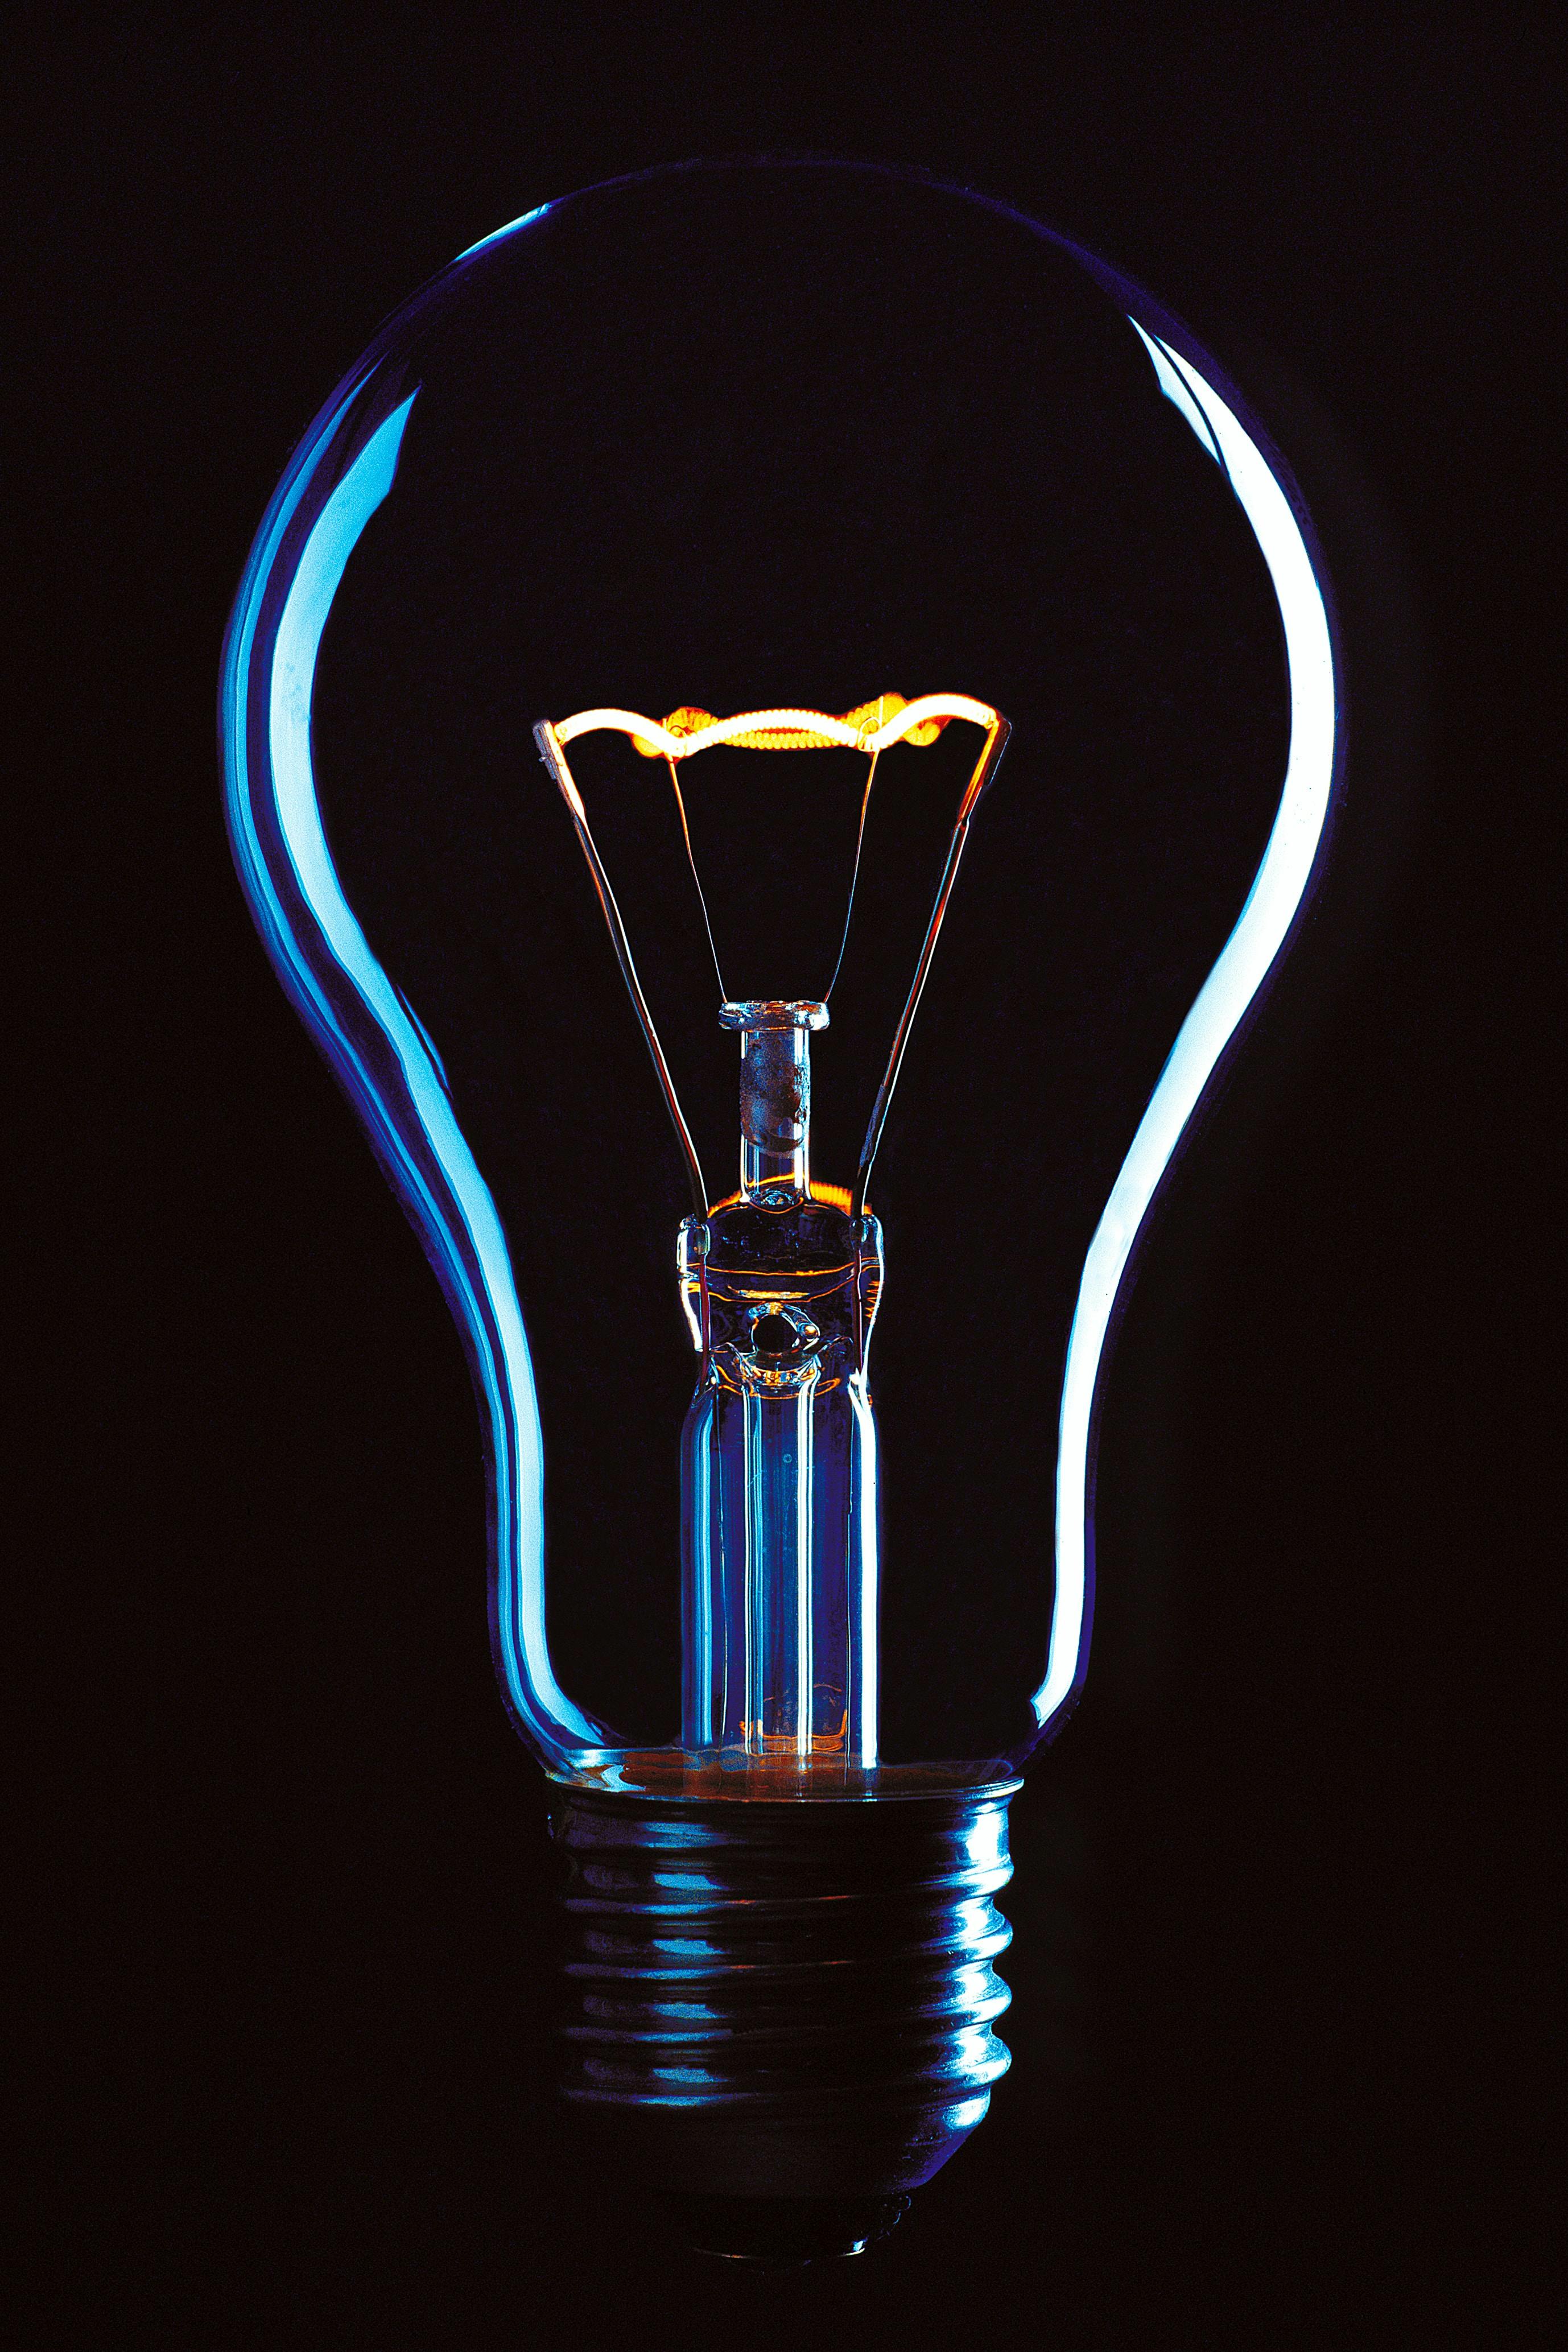 inTech light bulb